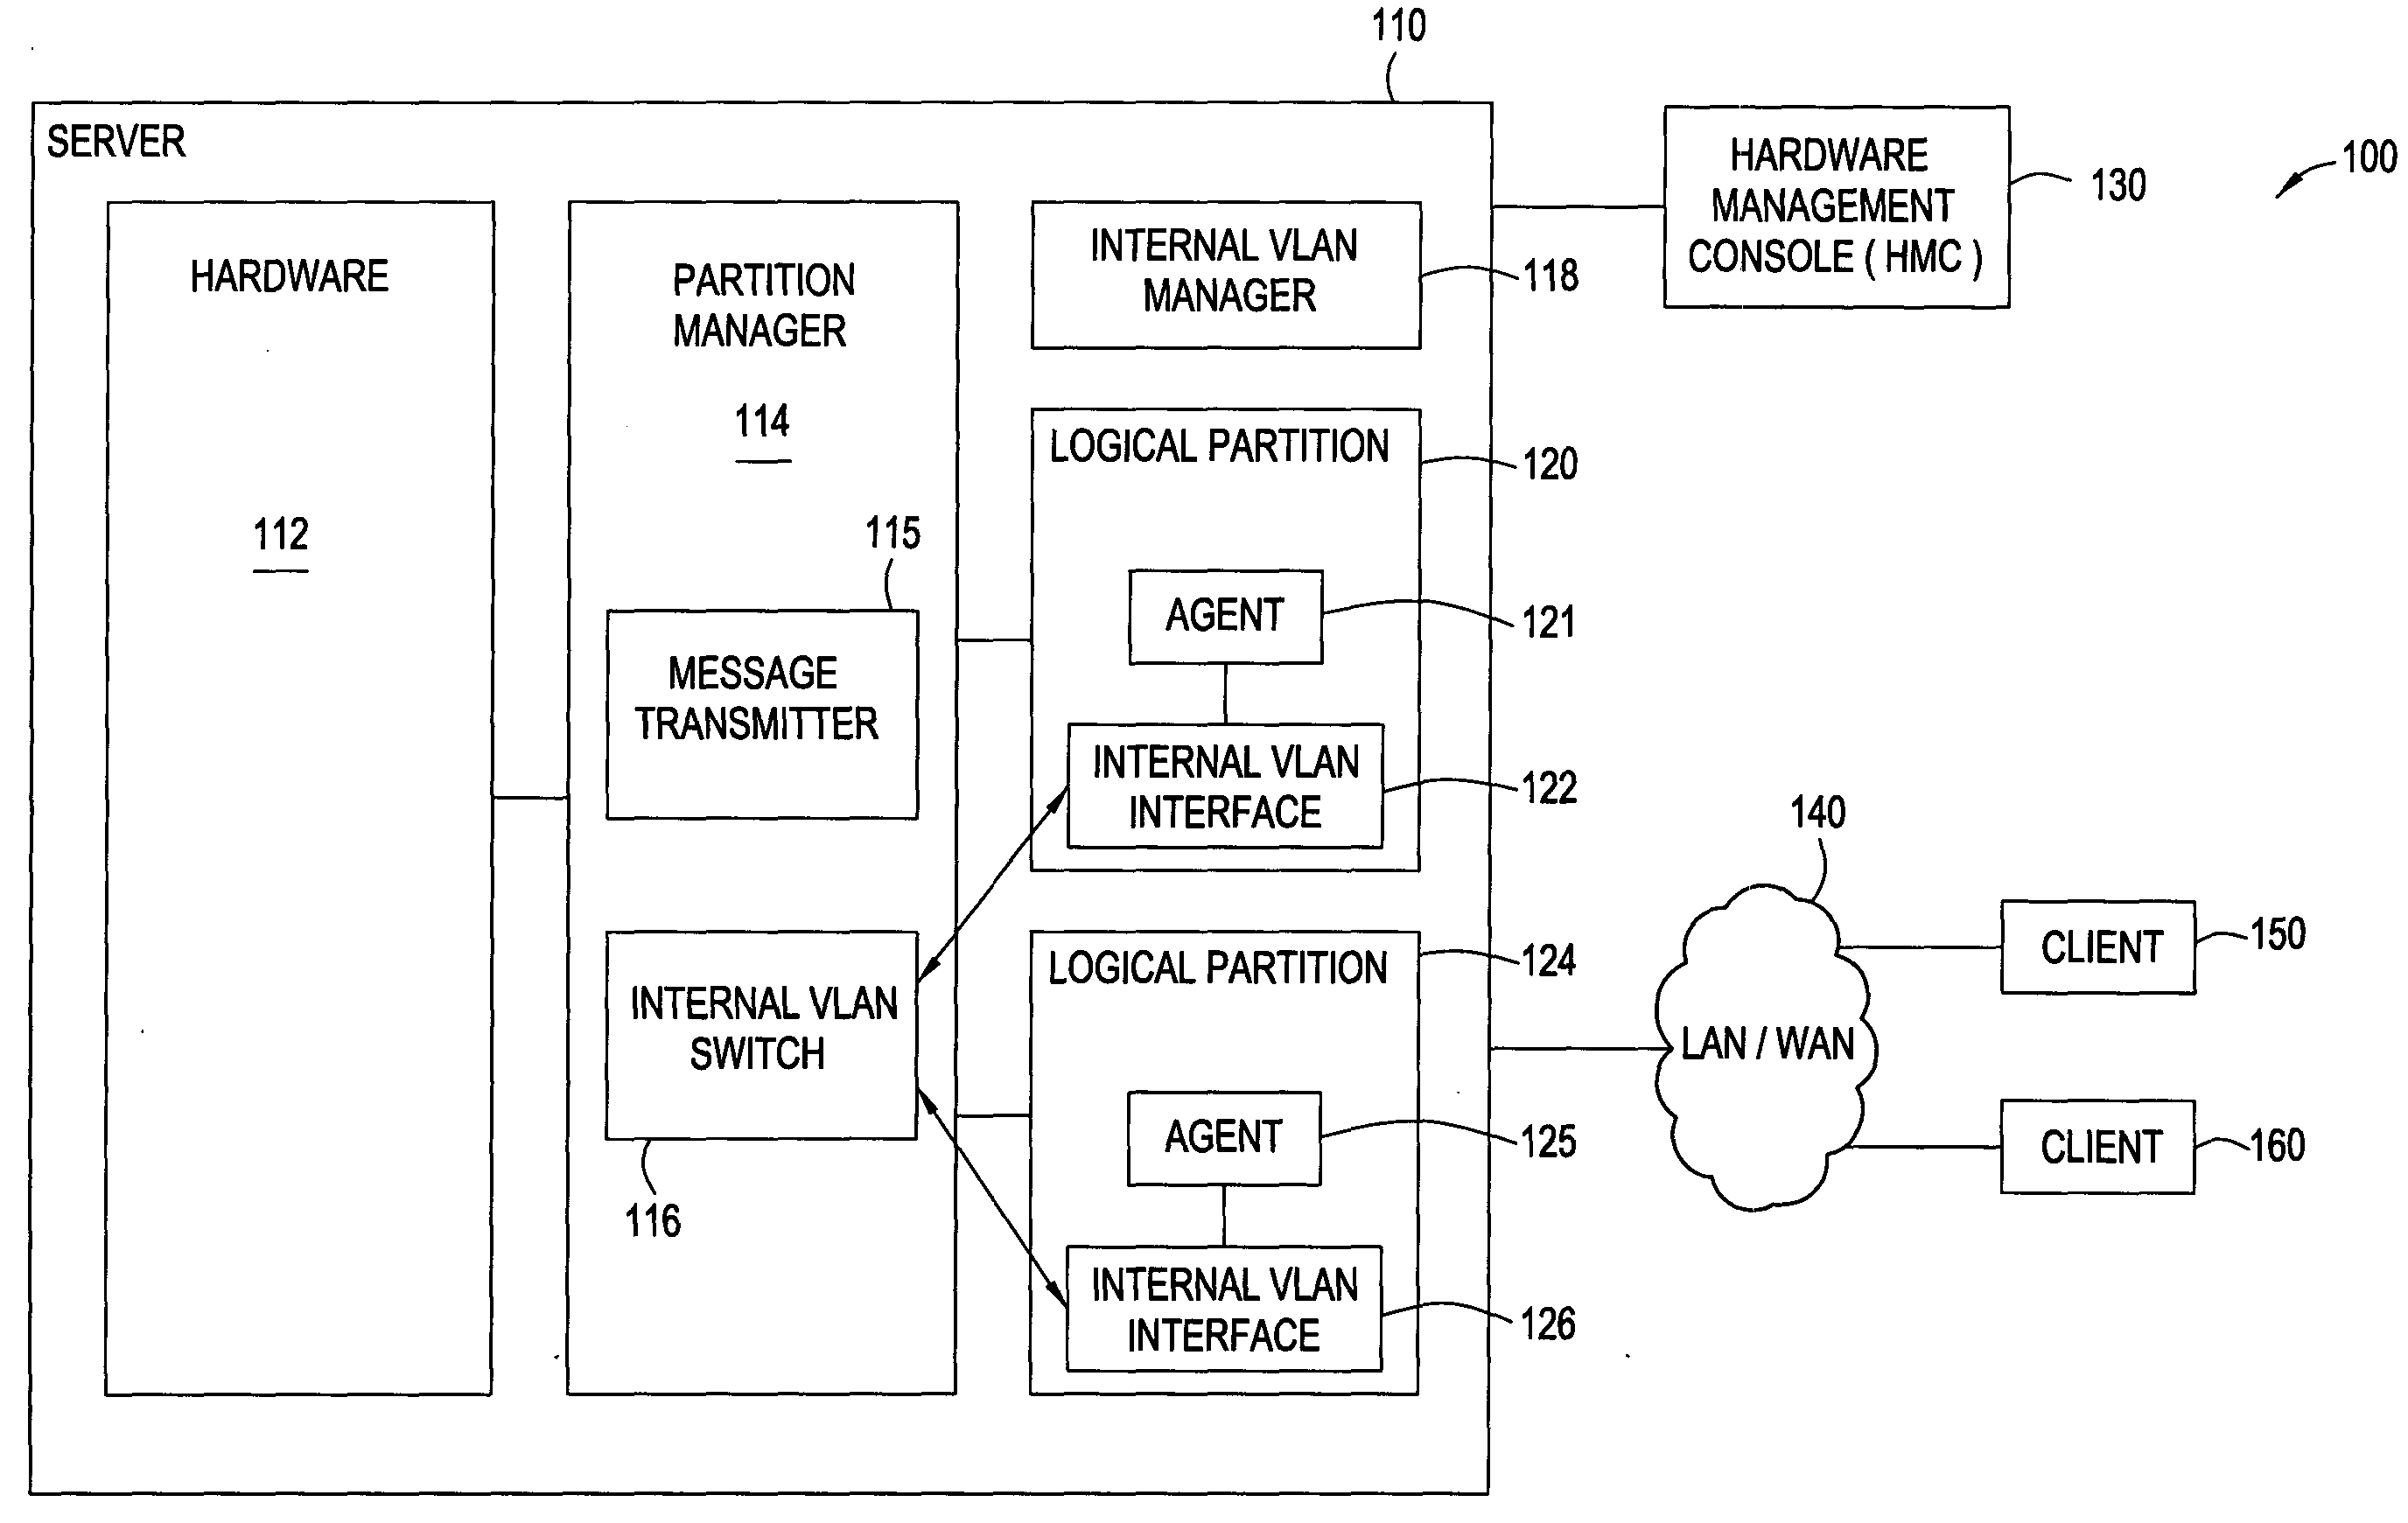 Auto-configuration of an internal vlan network interface